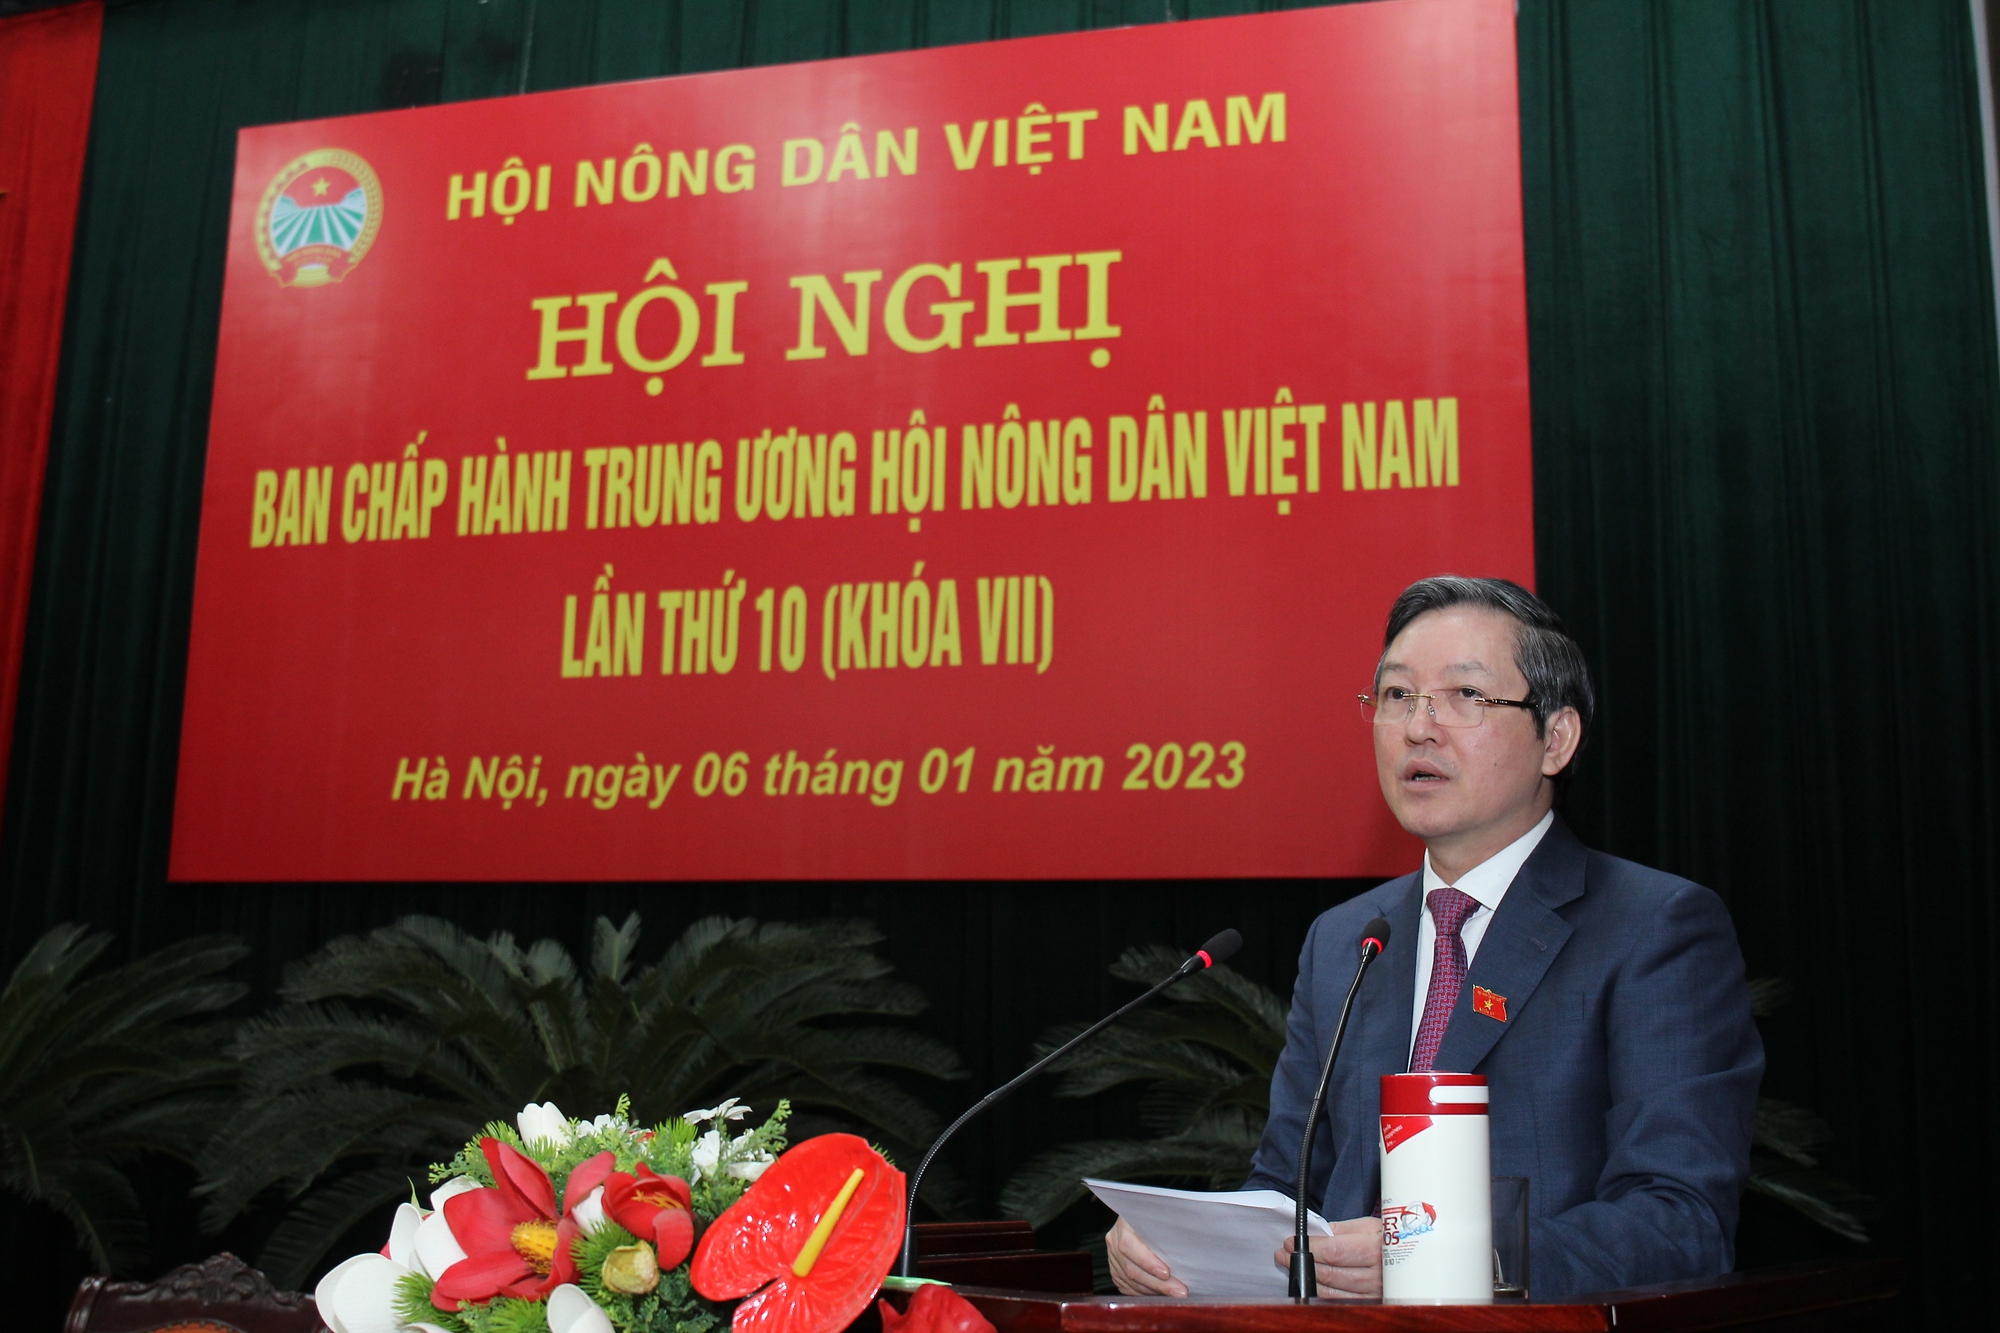 Chủ tịch Trung ương Hội NDVN Lương Quốc Đoàn phát động phong trào thi đua của Hội NDVN năm 2023 - Ảnh 1.